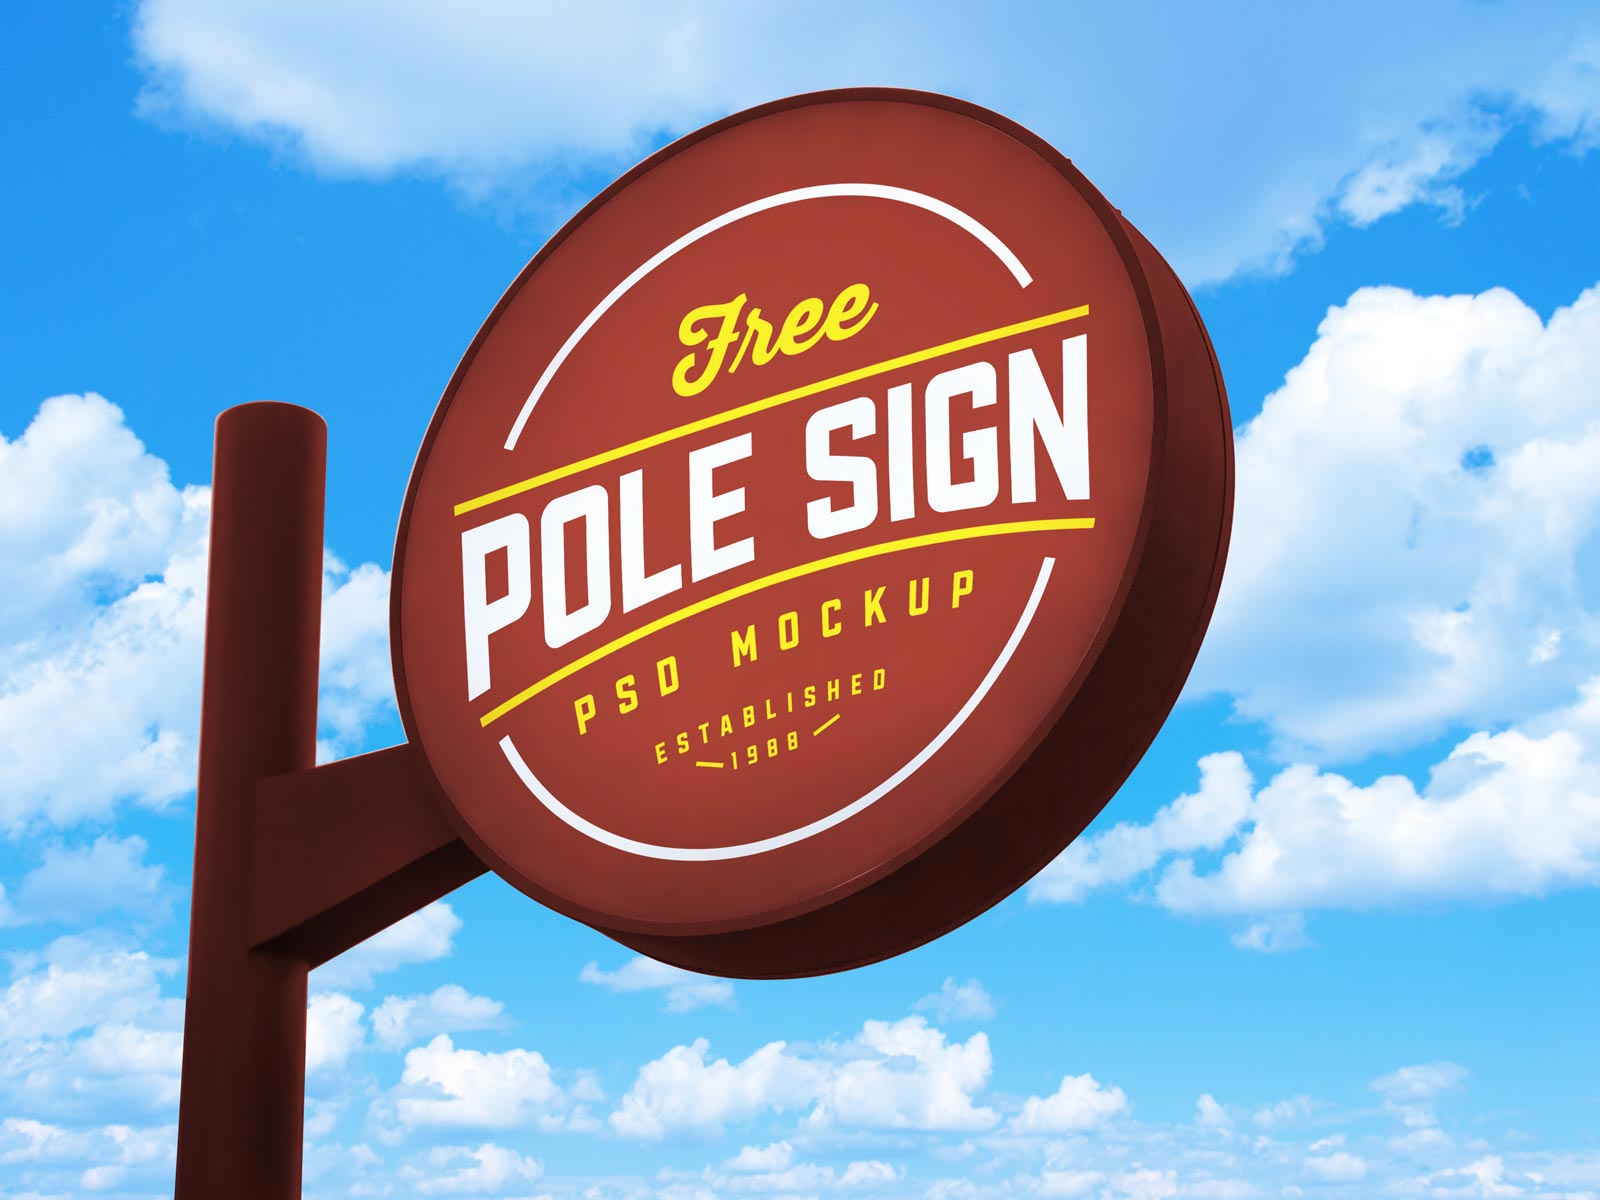 Free-Round-Pole-Signage-Mockup-PSD